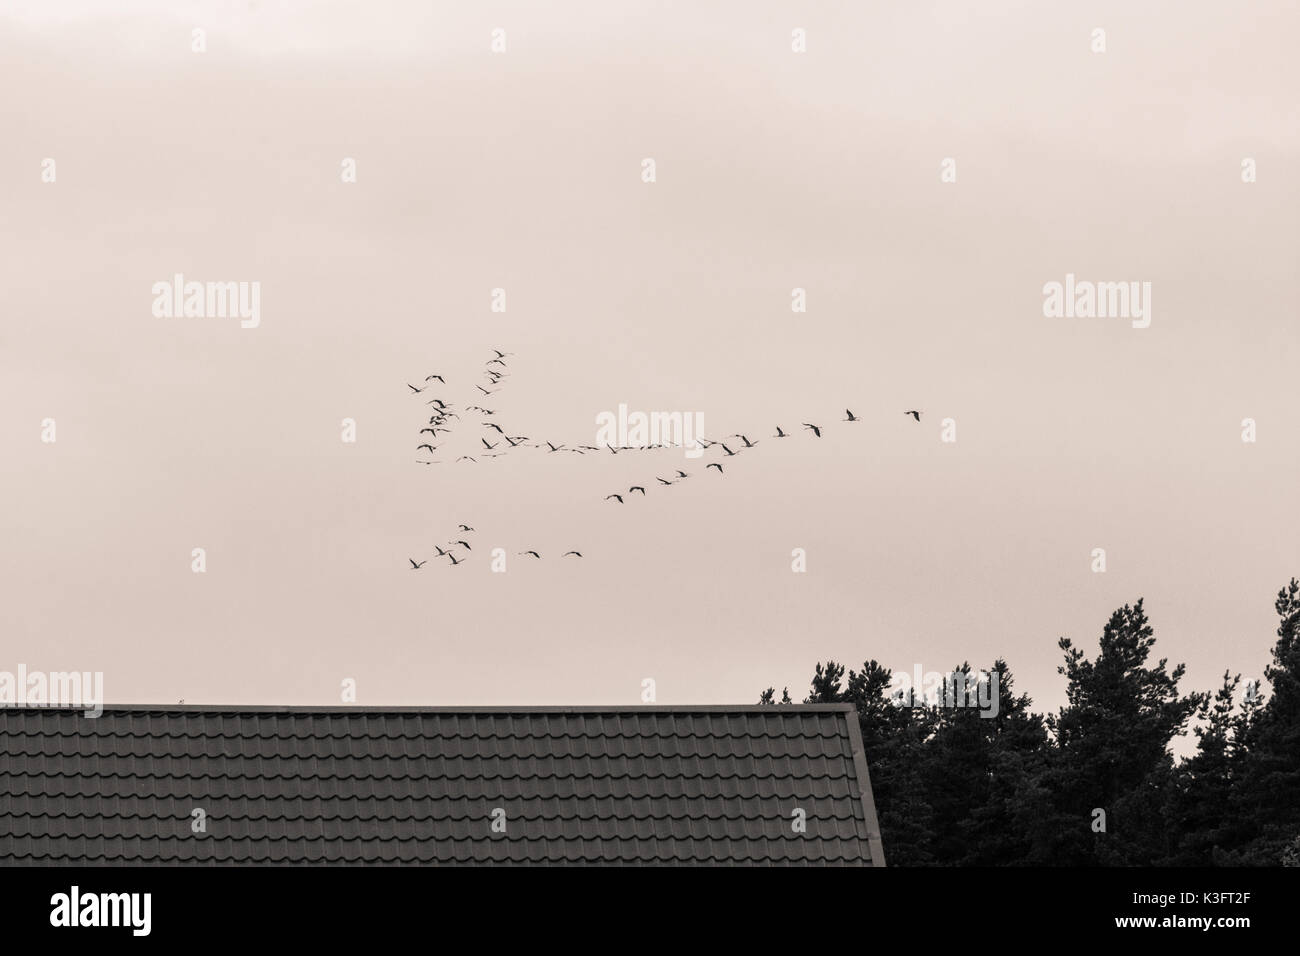 Une belle formation d'un des oiseaux migrateurs en automne. Vol de grues vers le sud en automne. Photographie monochrome. Banque D'Images